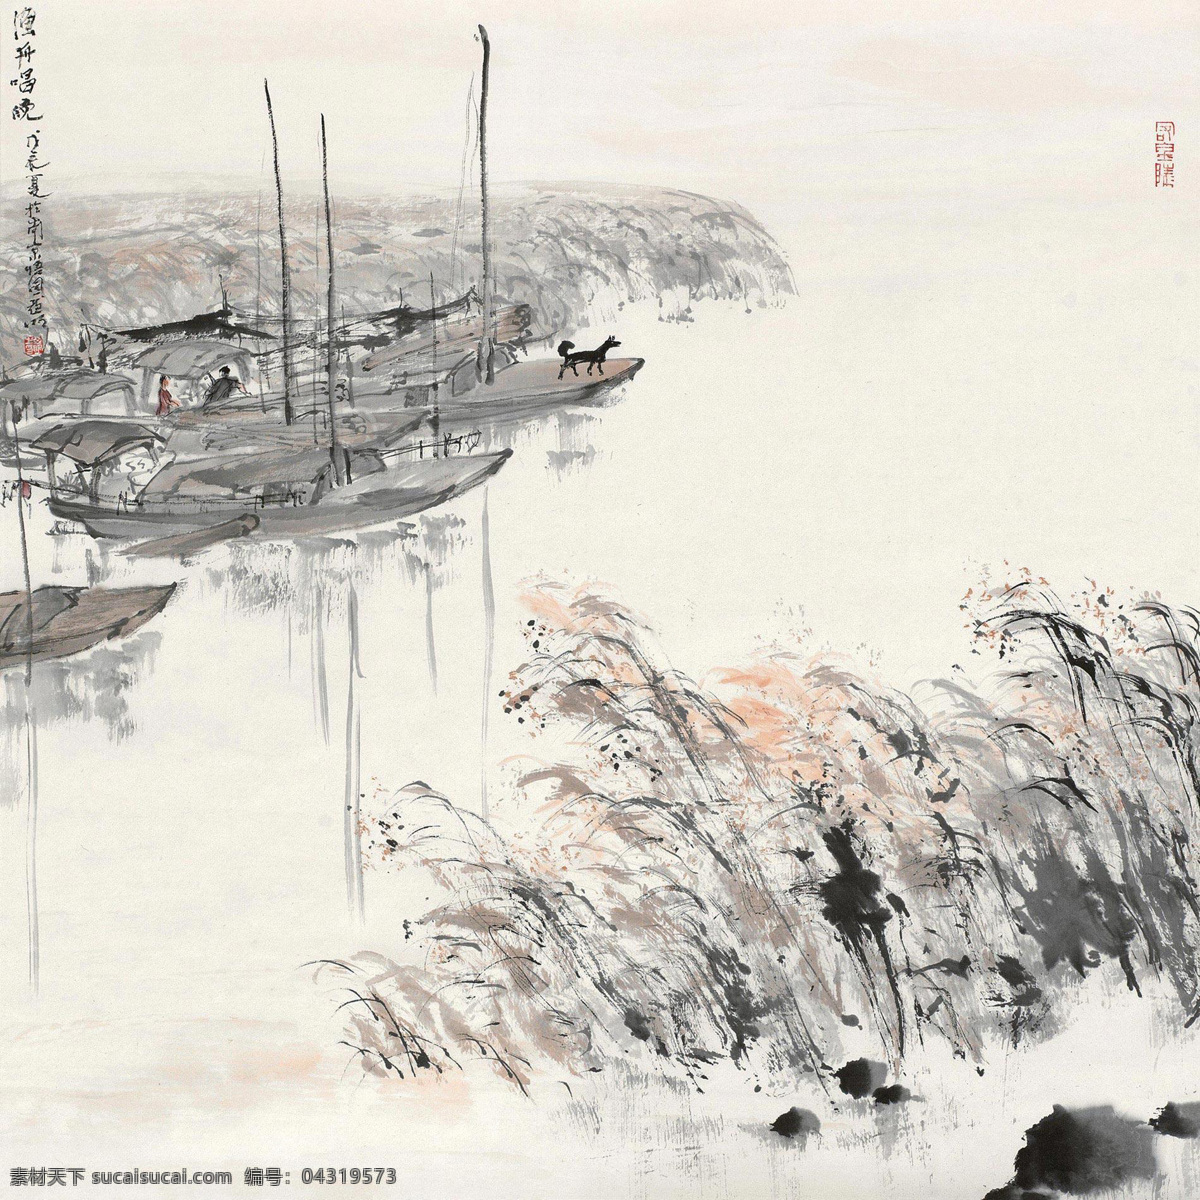 渔舟唱晚 国画 绘画 写意 水墨 植物 芦苇 帆船 国画艺术 绘画书法 文化艺术